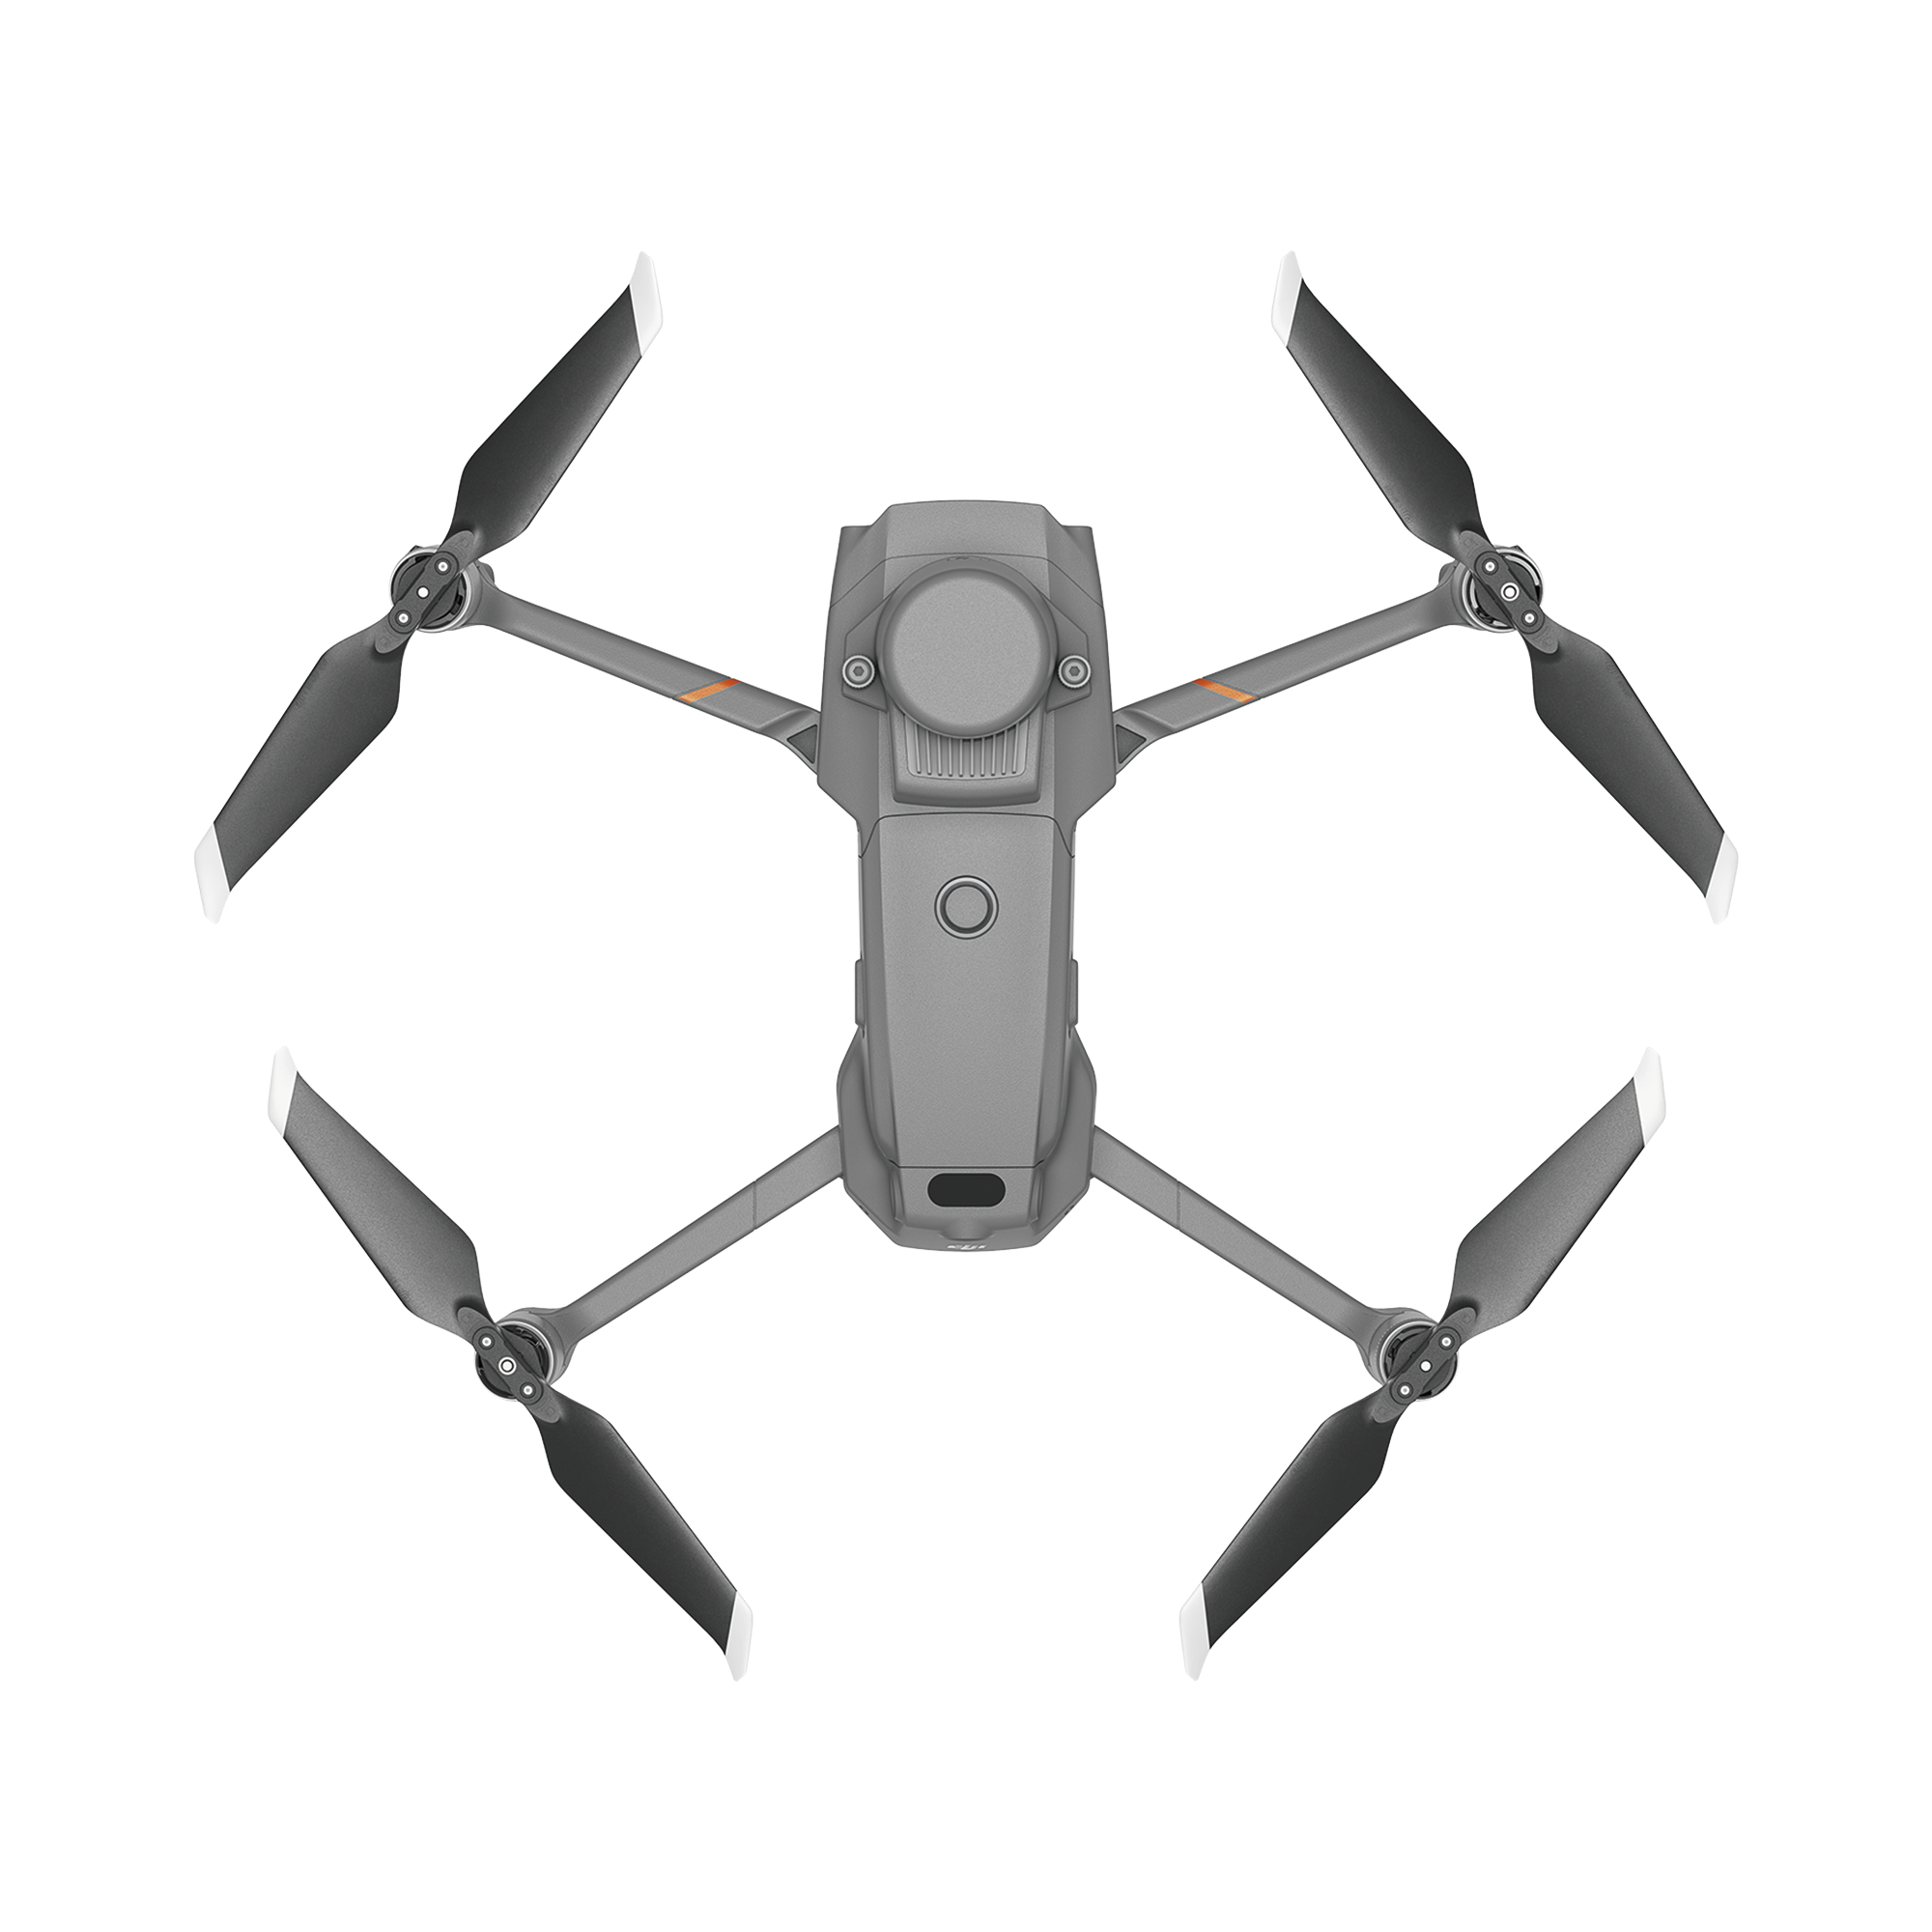 Drone DJI Mavic 2 Enterprise Advanced Edición Universal/ Dual Cámara(visual e infraroja)